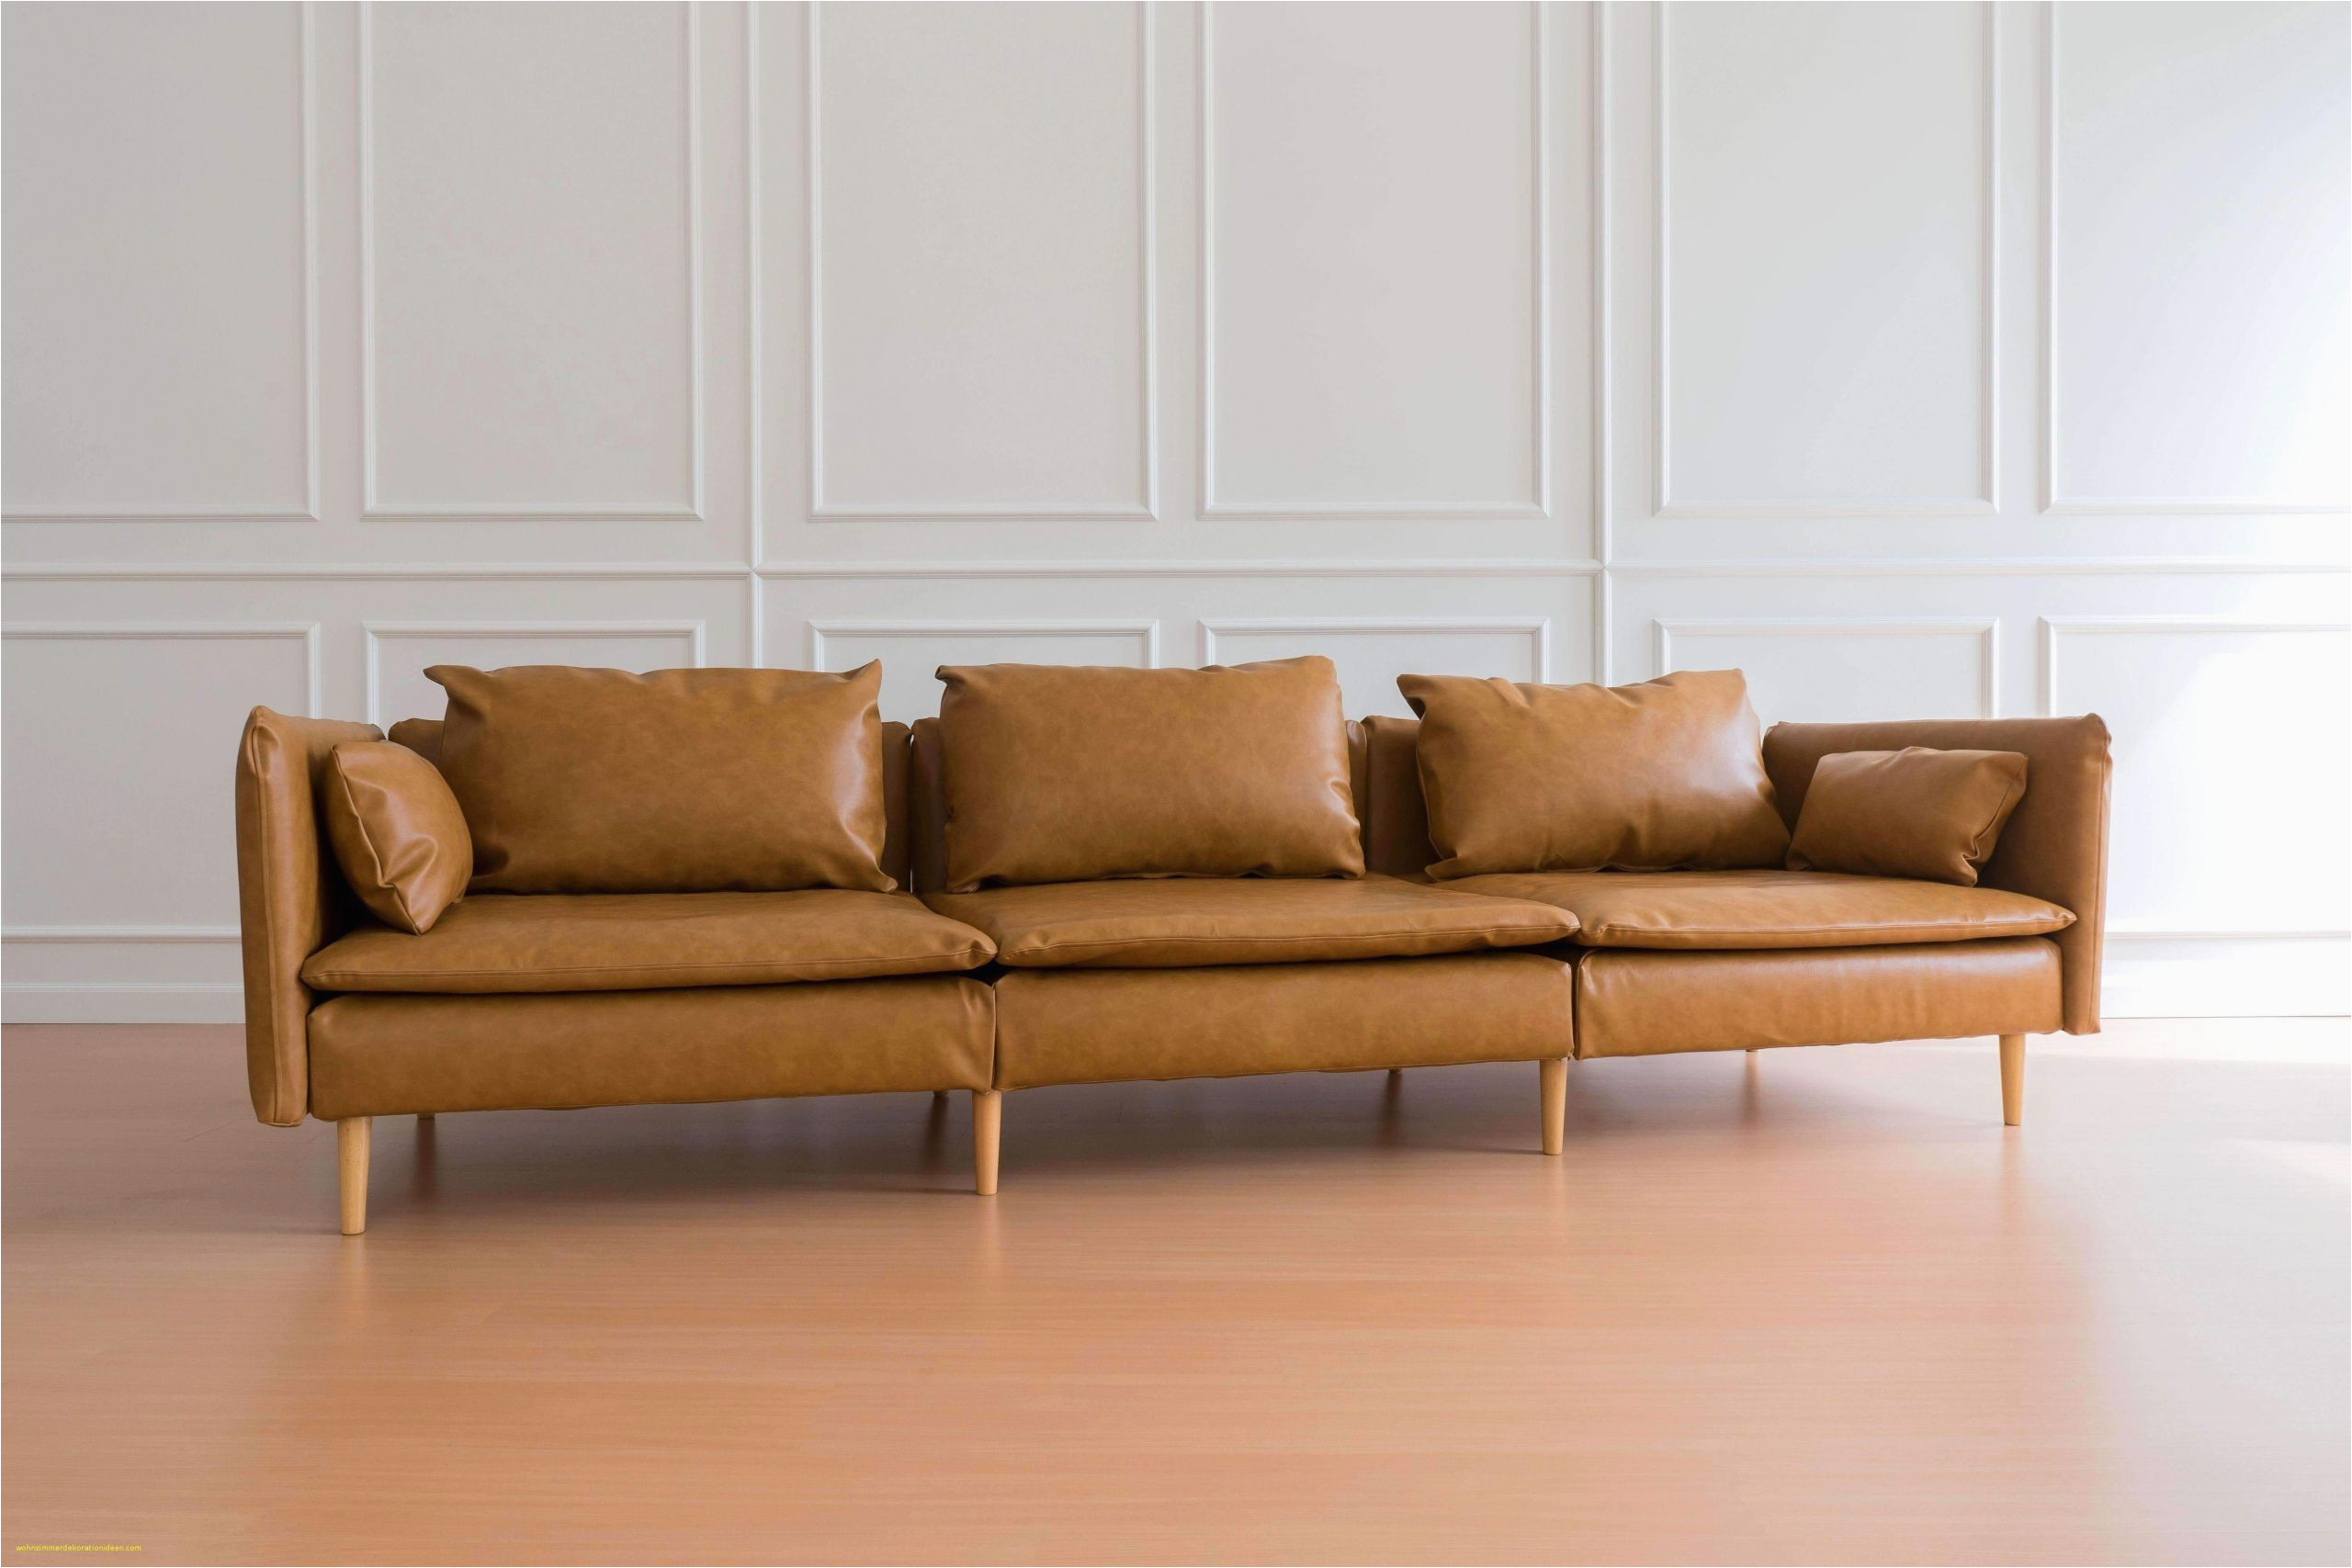 bild wohnzimmer elegant kleines sofa ikea inspirierend kleines ecksofa ikea bild of bild wohnzimmer scaled